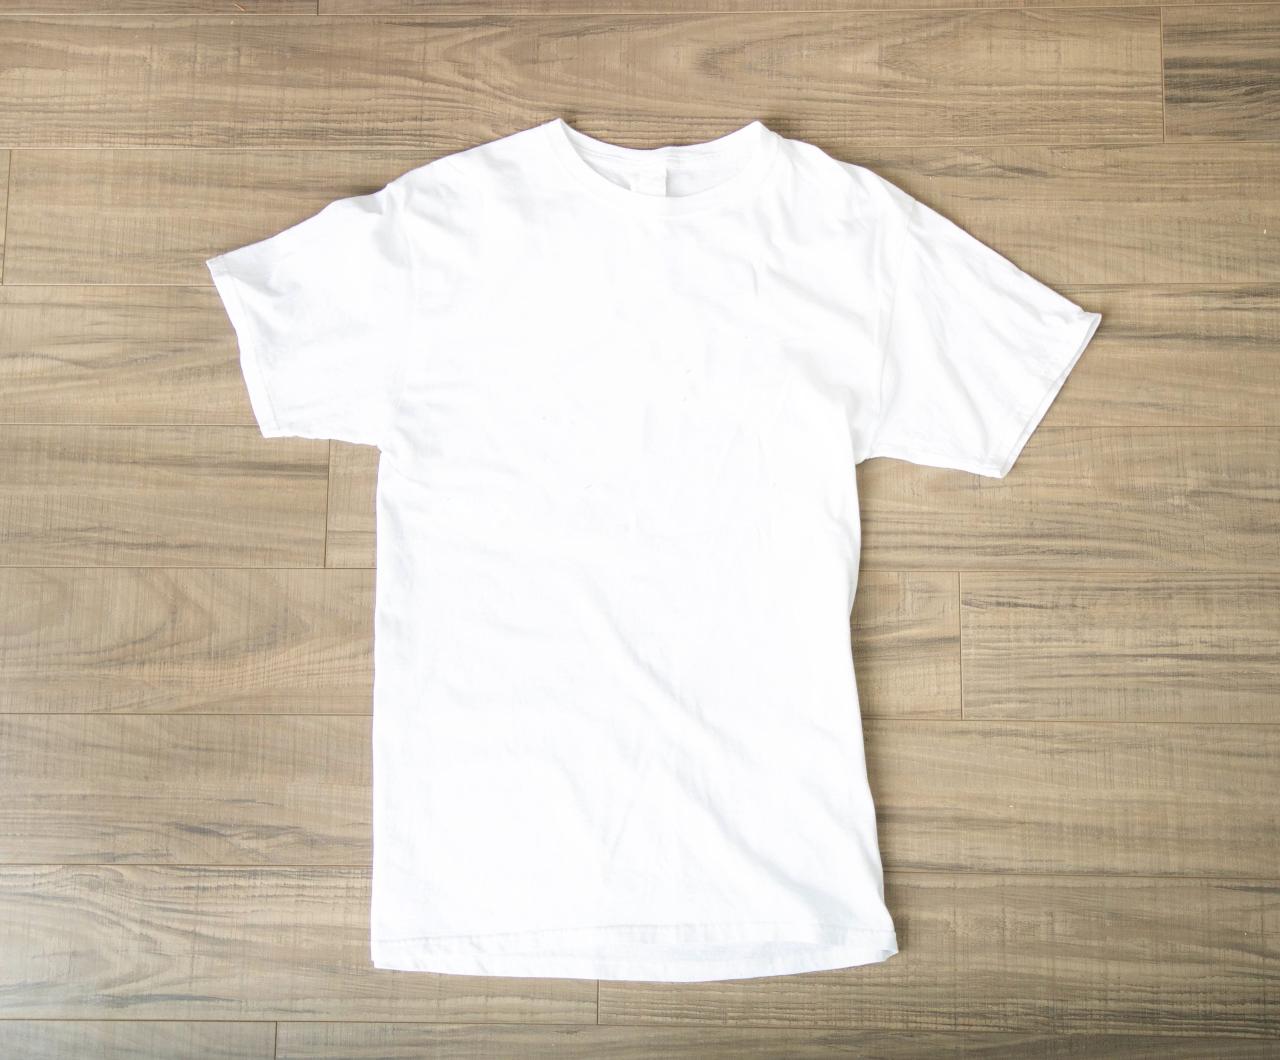 White Shirt For Mockup